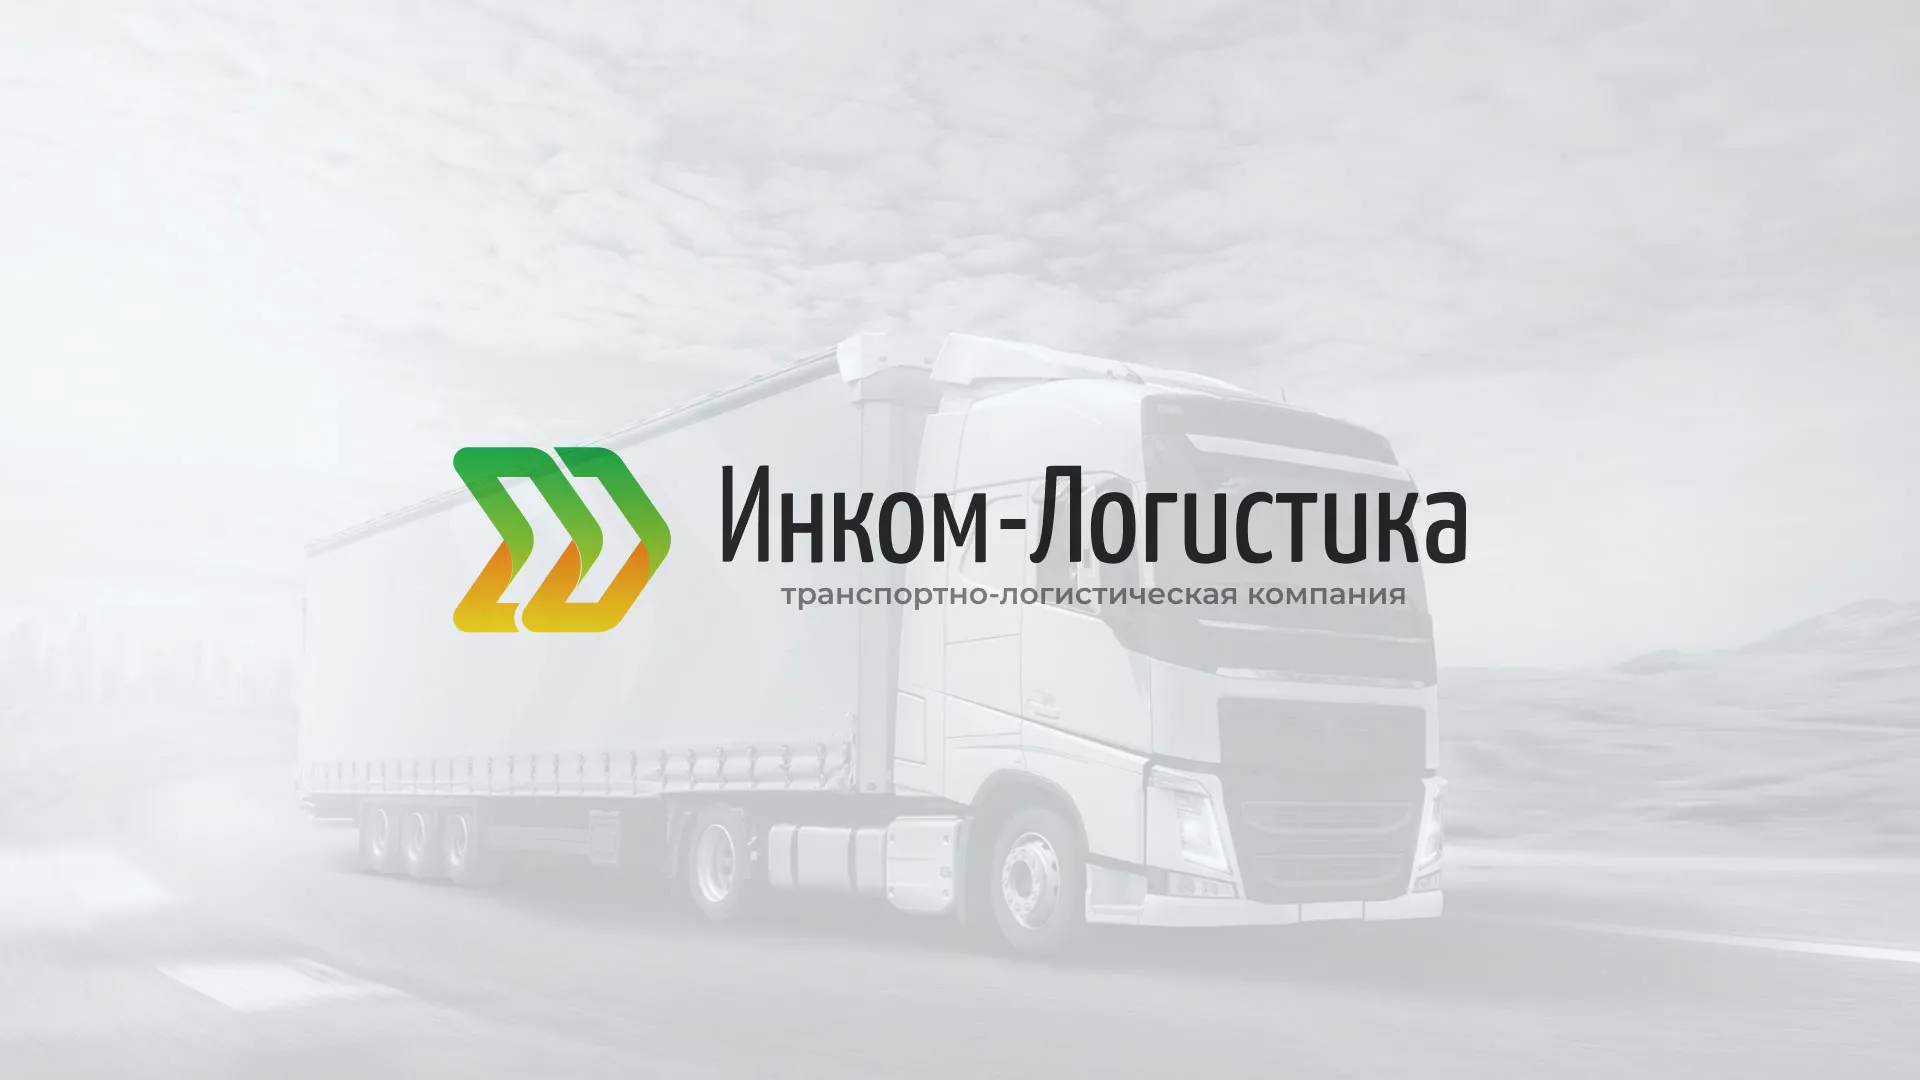 Разработка логотипа и сайта компании «Инком-Логистика» в Уссурийске